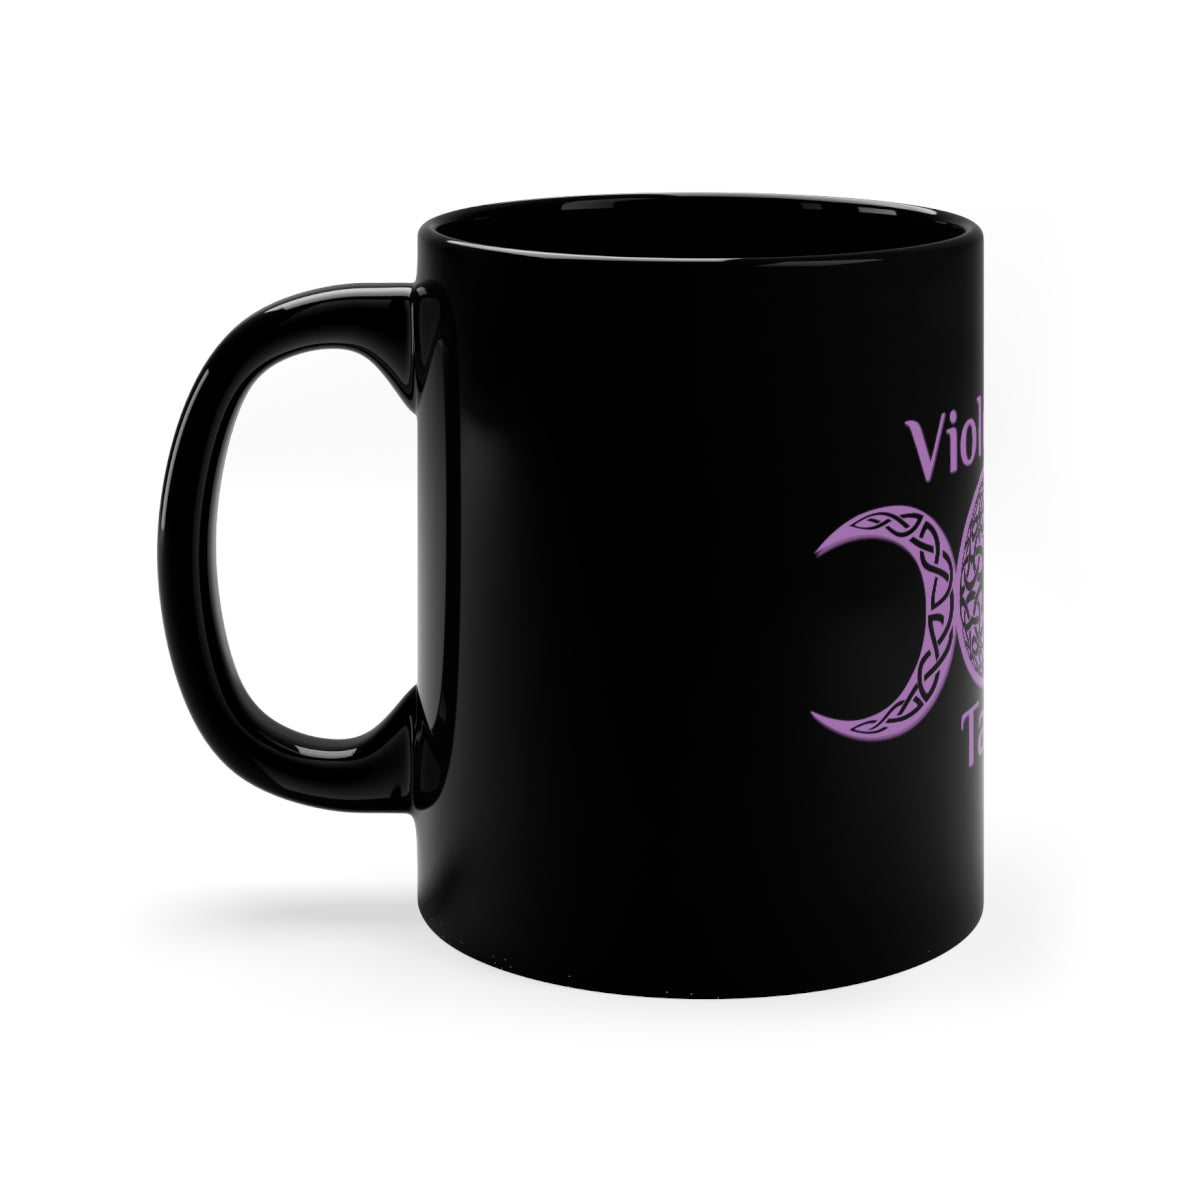 Violetann Tarot Logo - 11oz Black Mug